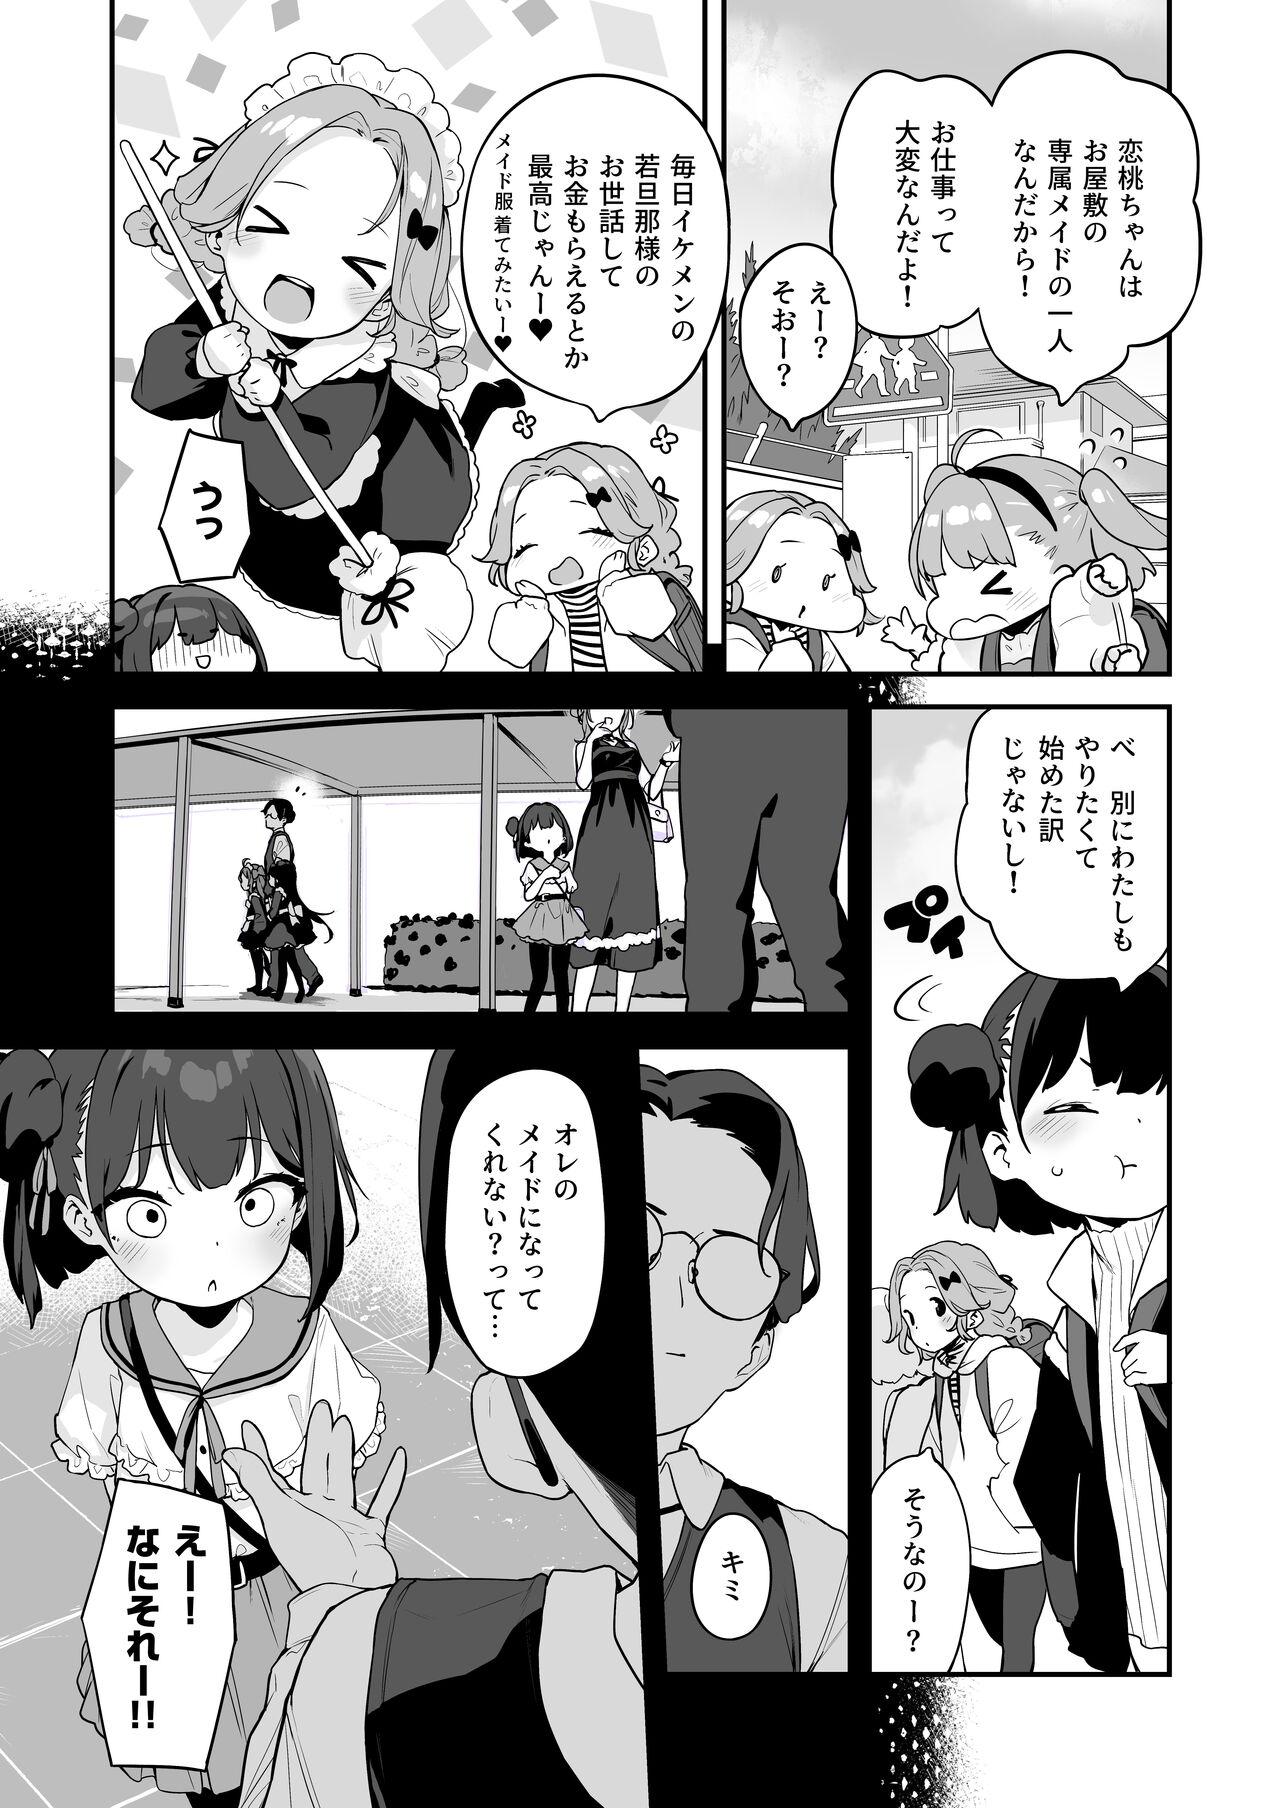 Dicks Komomo wa Goshujinsama Senyo no Ryoana Nikubenki Loli Maid - Original Uncensored - Page 9